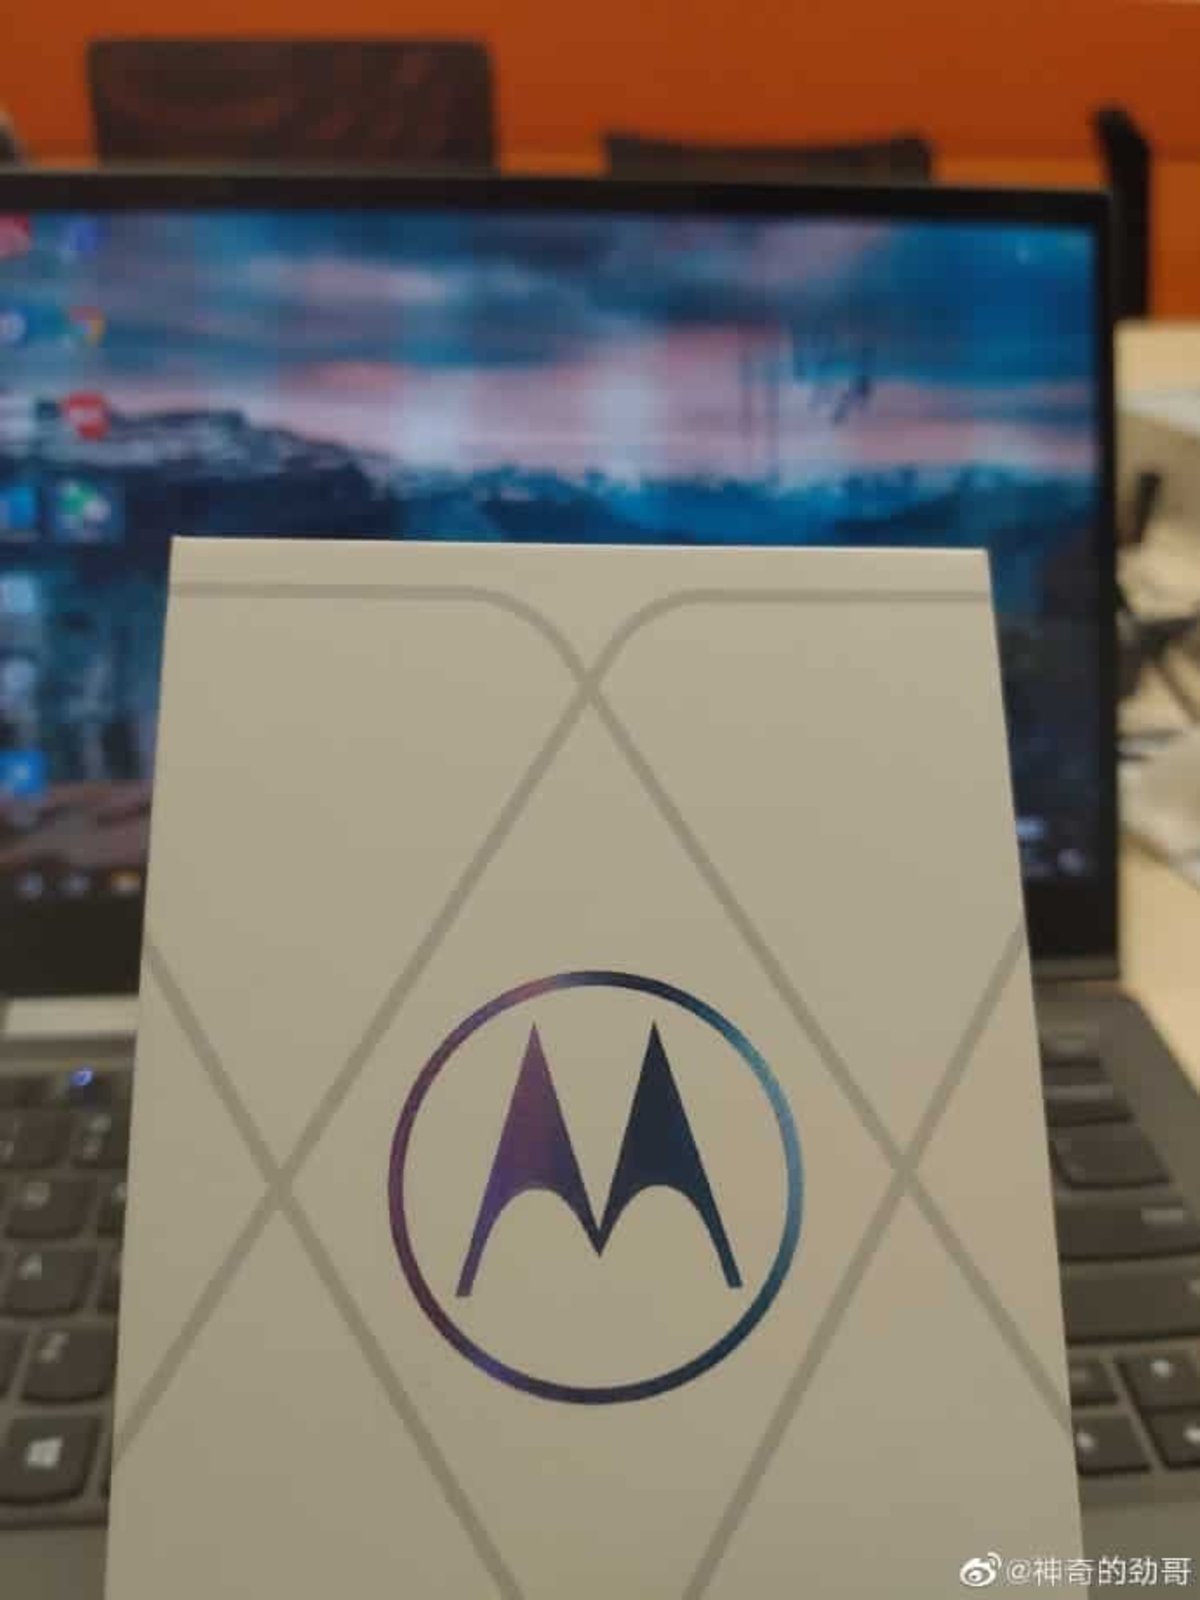 Móvil Motorola con Snapdragon 888.